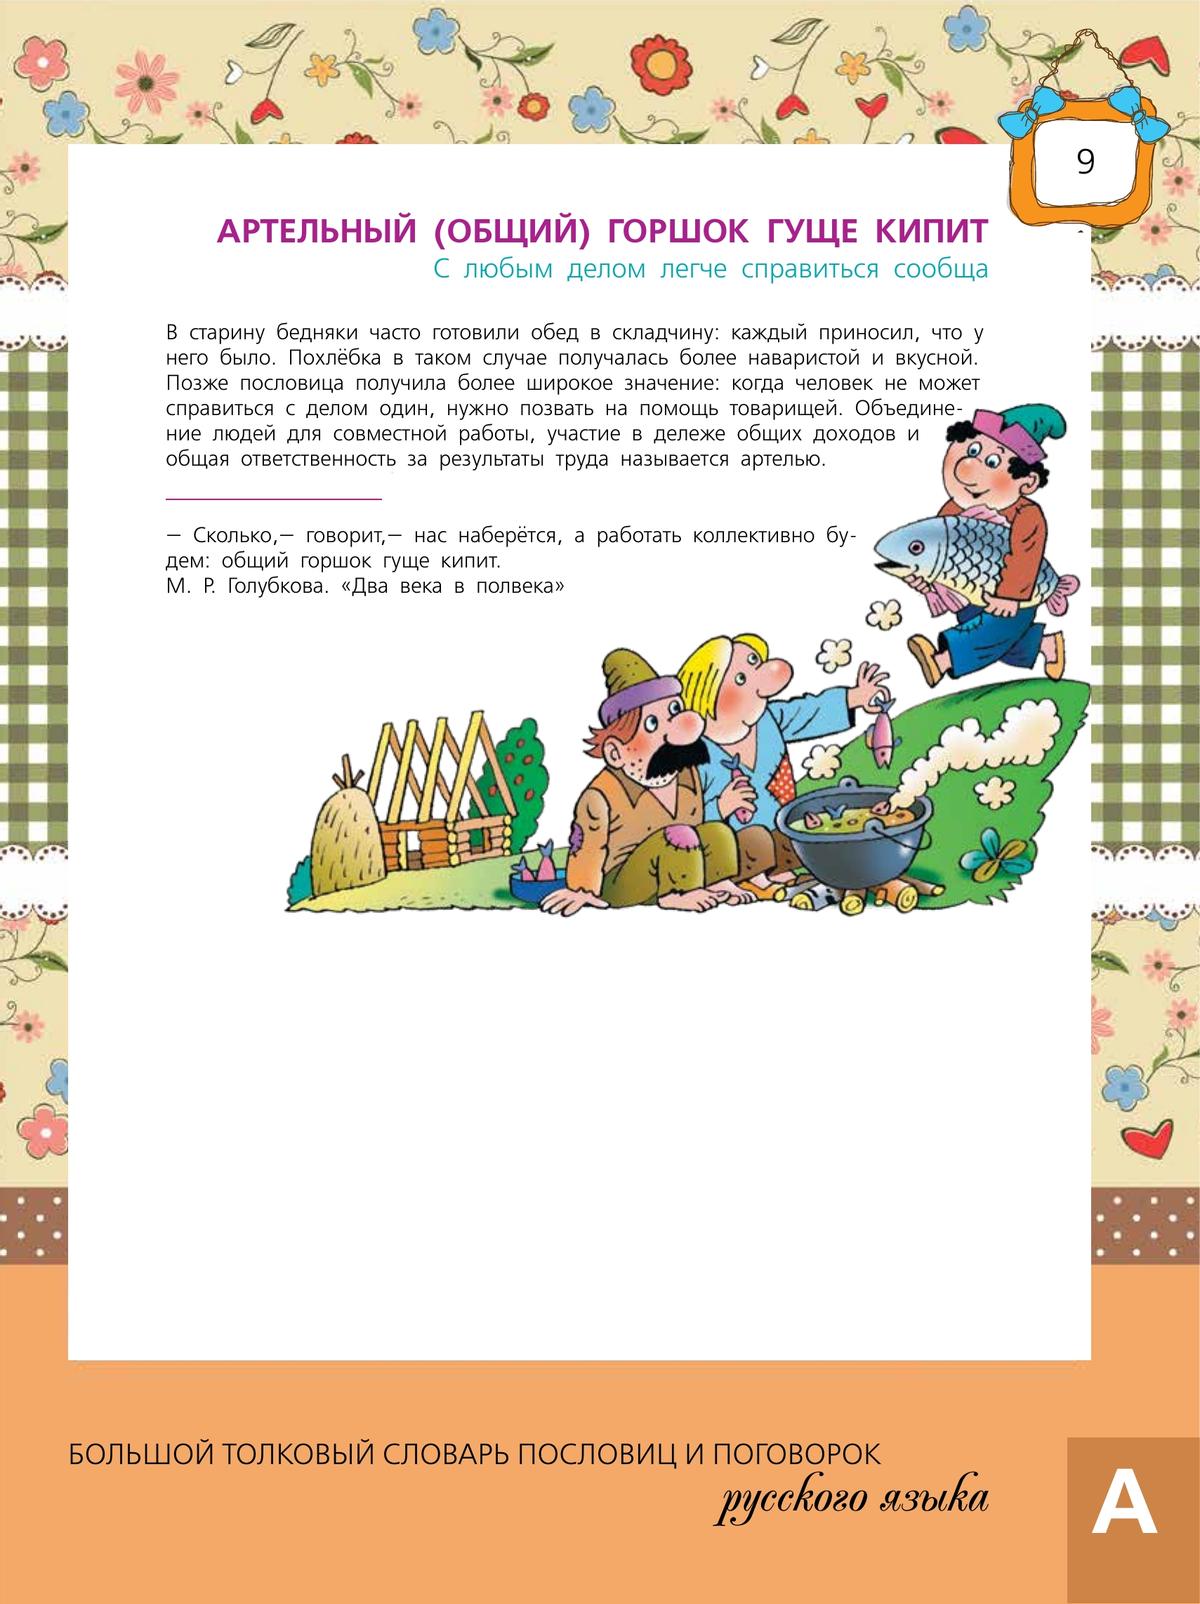 Большой толковый словарь пословиц и поговорок русского языка для детей 11